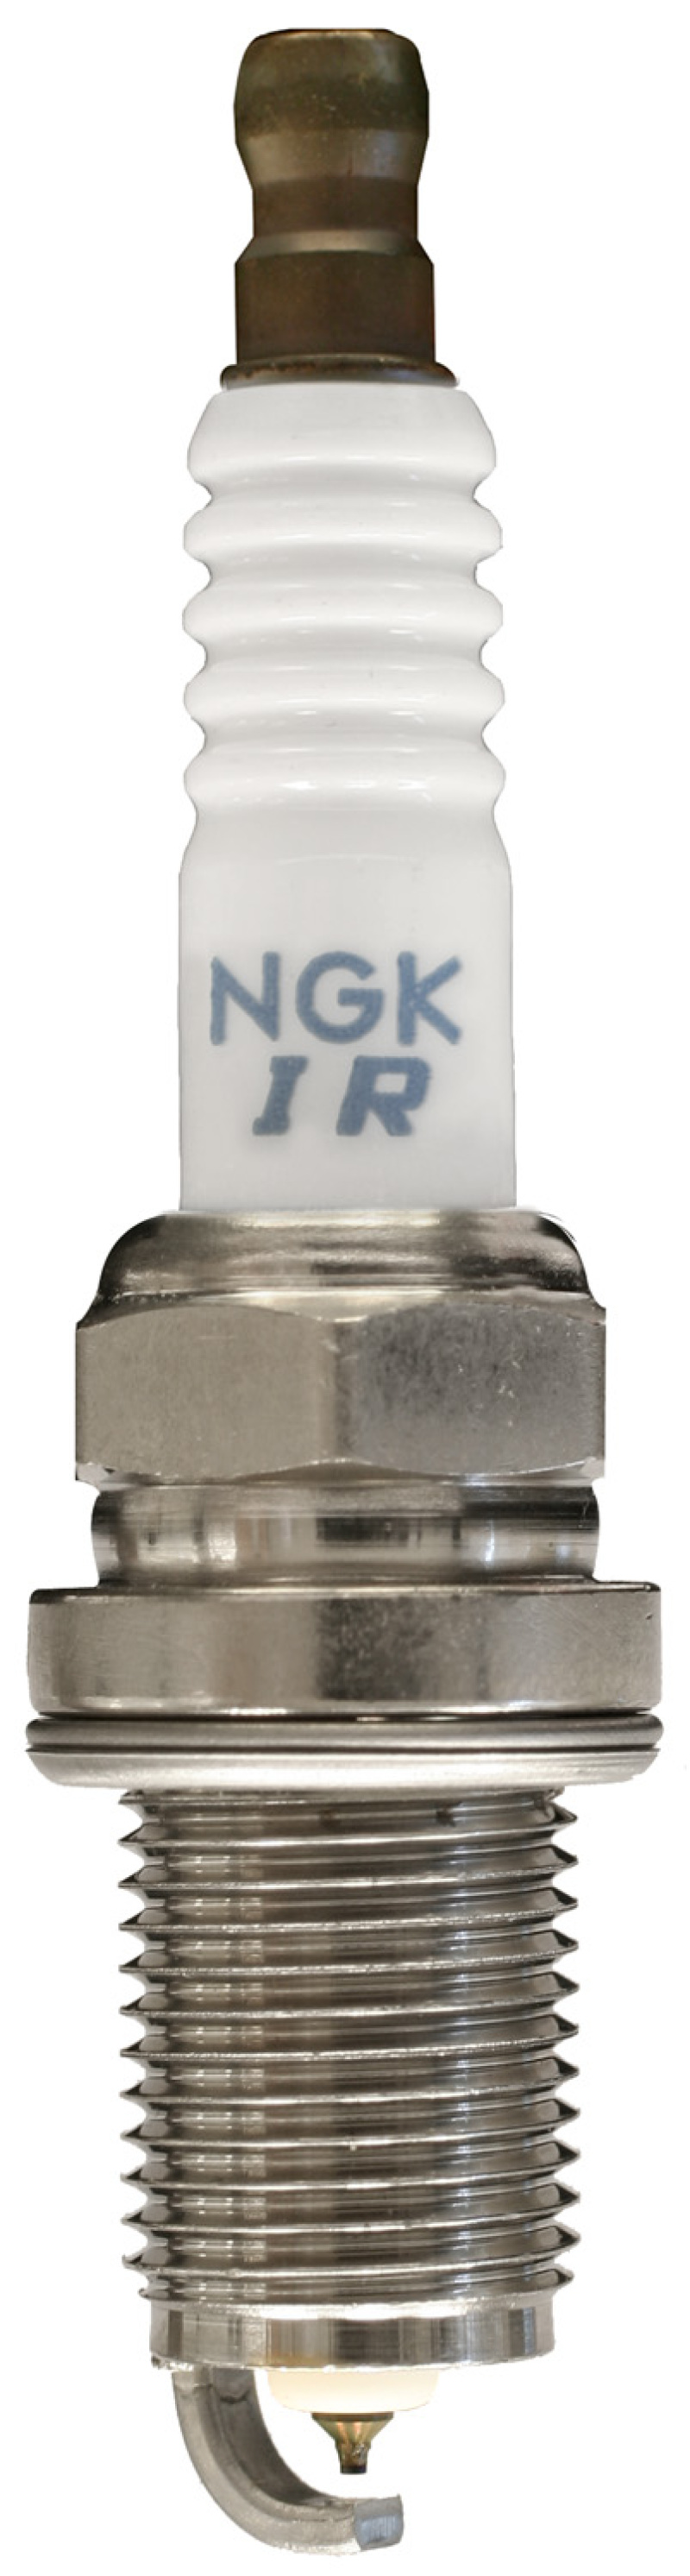 NGK Laser Platinum Spark Plug Box of 4 (IFR6Z7G) - 95609